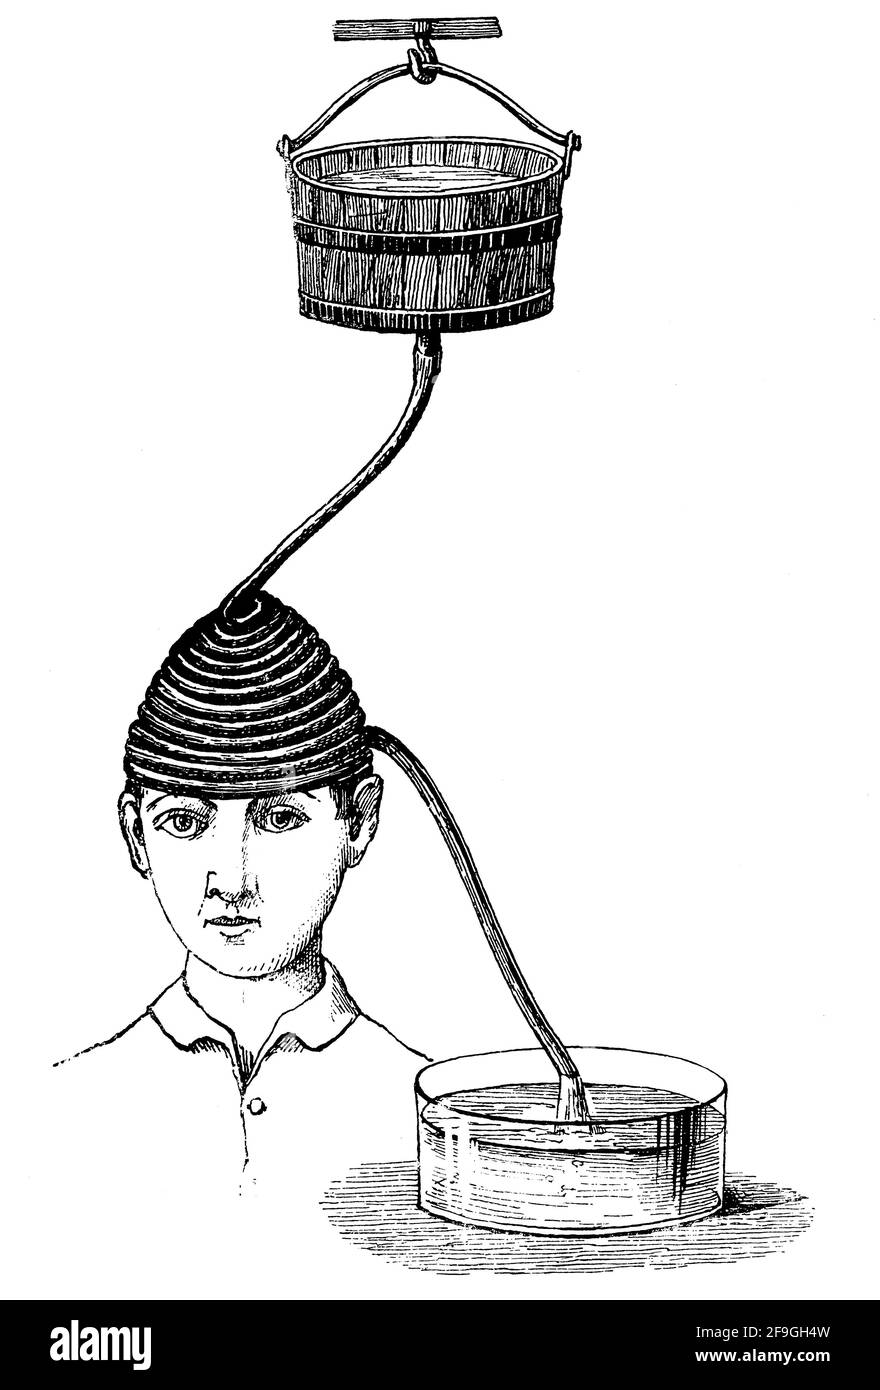 Trattamento con acqua fredda per mal di testa persistenti. Illustrazione del 19 ° secolo. Germania. Sfondo bianco. Foto Stock